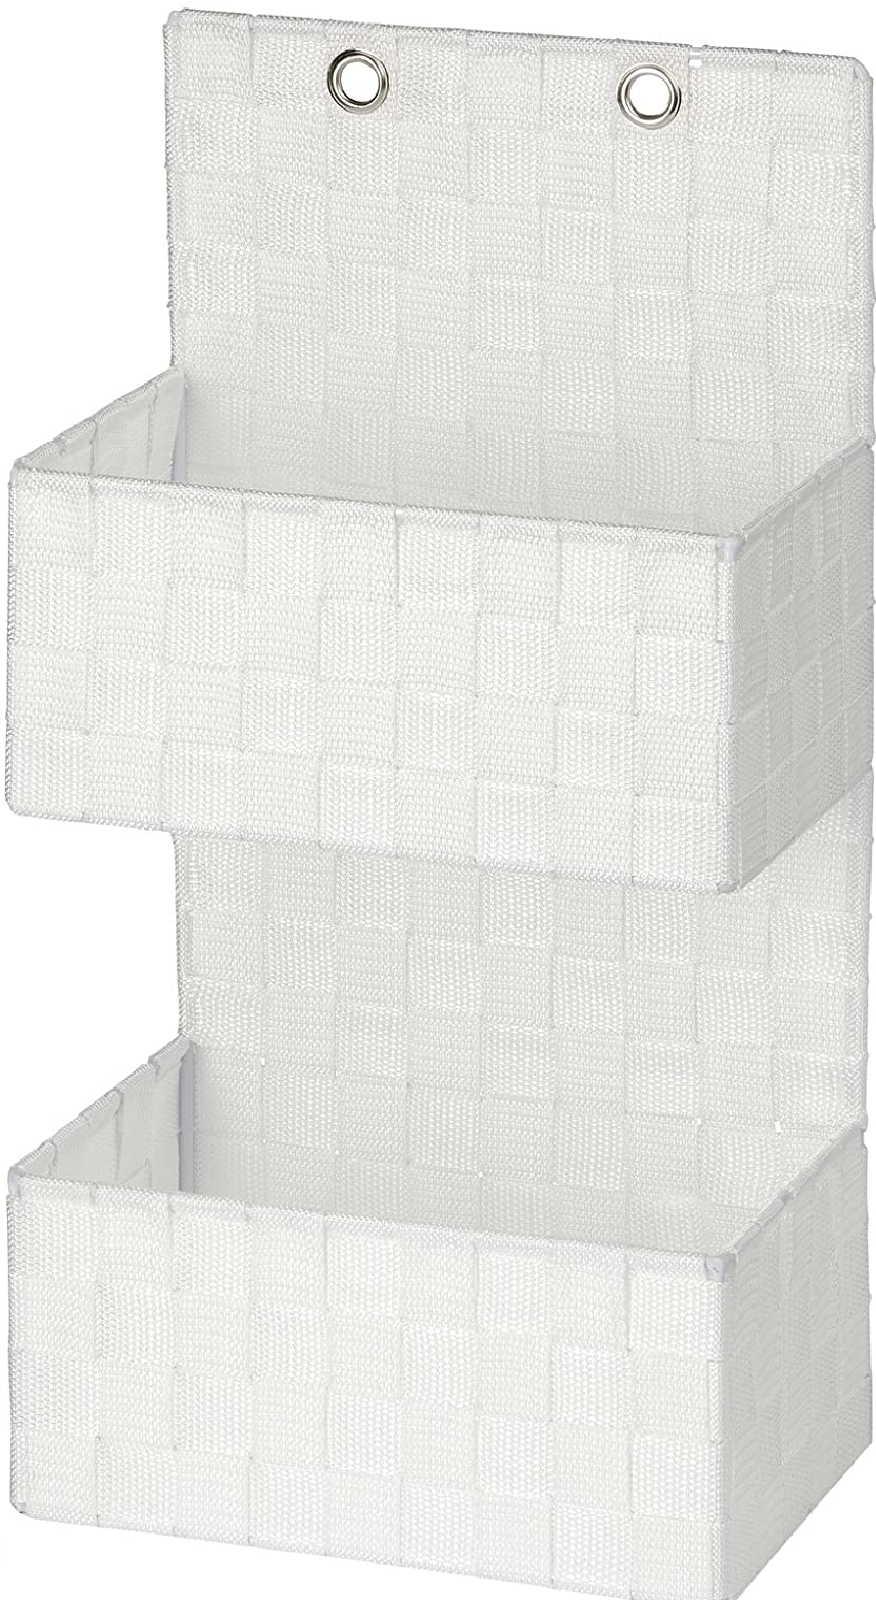 Organizer Adria Weiß zum Hängen - Badkorb, 2 Etagen, Polypropylen, 25 x 48 x 15.5 cm, Weiß